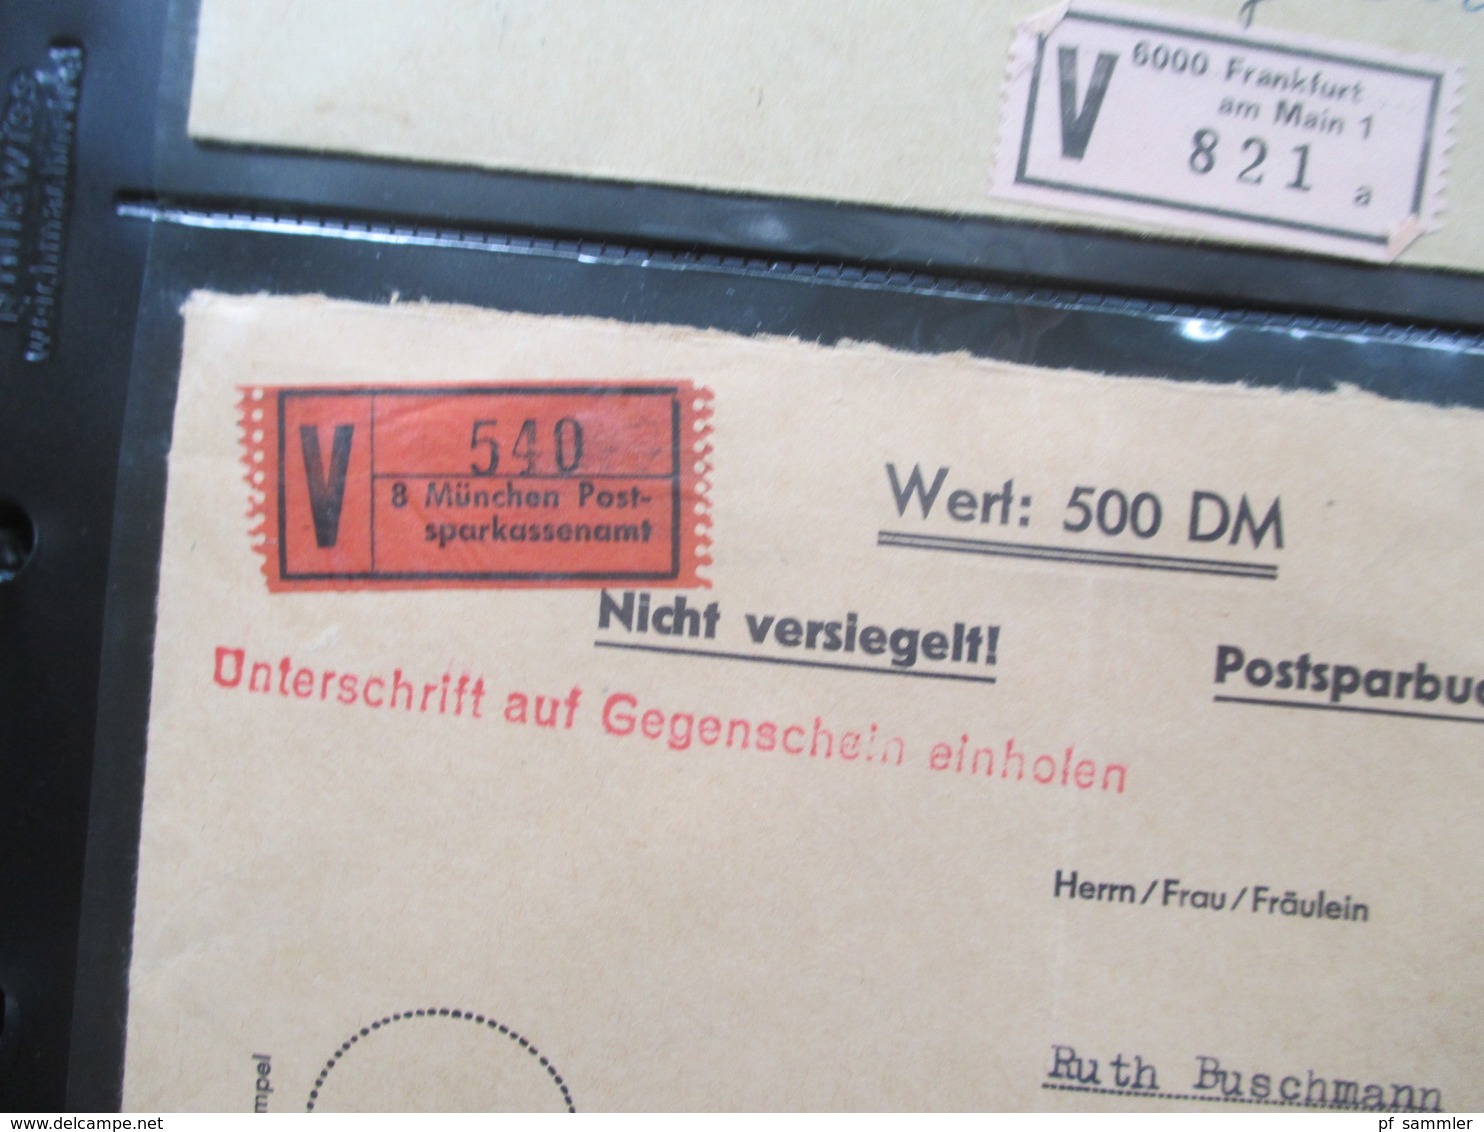 BRD / Berlin Album mit 128 Belegen fast nur Wertbriefe / Eilboten Belege! 1950 - 90er Jahre. Schöne Frankaturen!